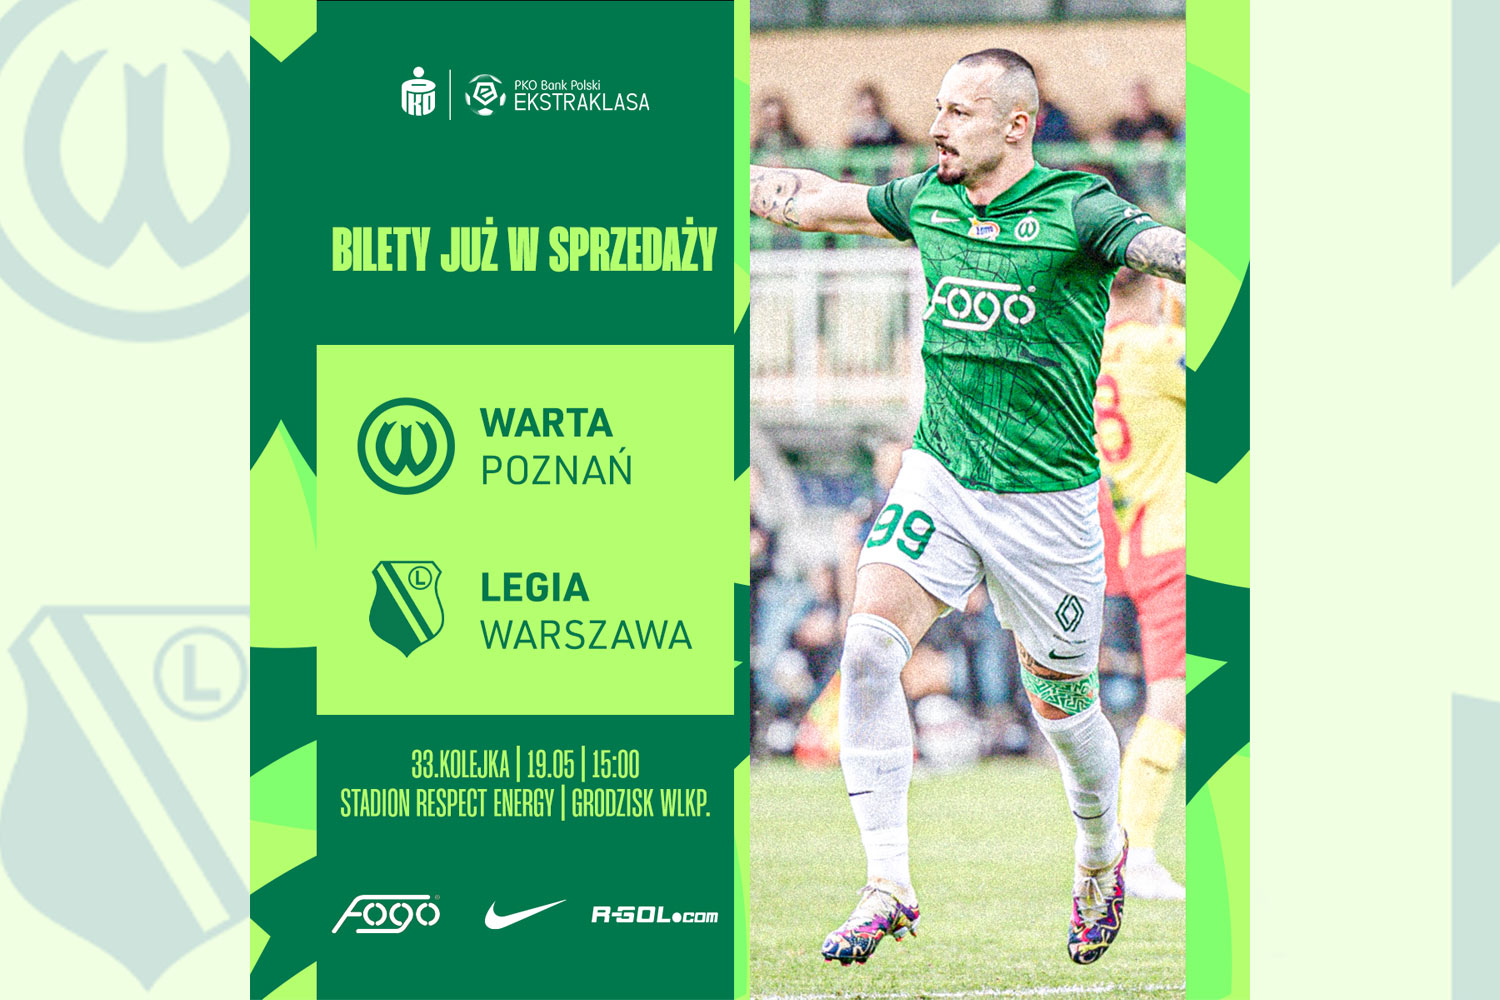 Kup bilet na mecz Warta Poznań - Legia Warszawa